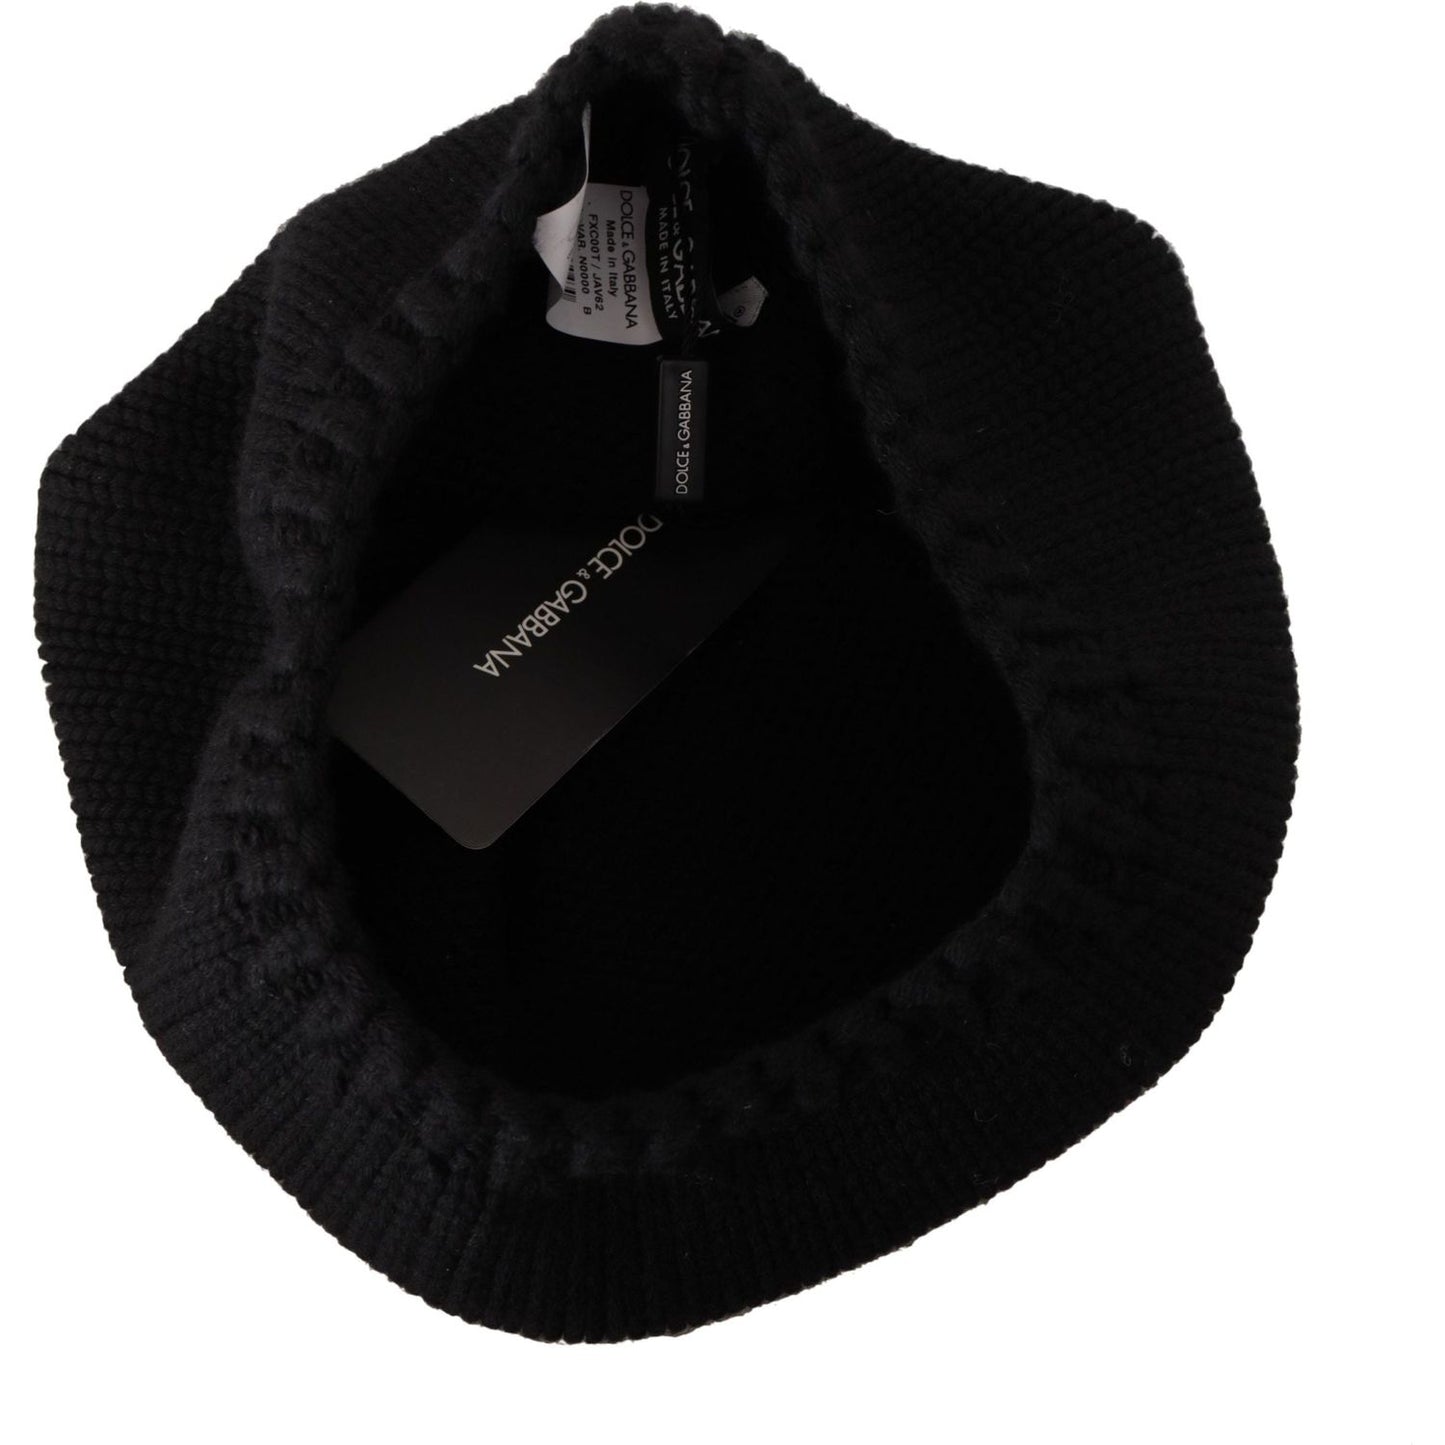 Dolce & Gabbana Elegant Virgin Wool Slouch Hat black-virgin-wool-knitted-women-winter-beanie-hat